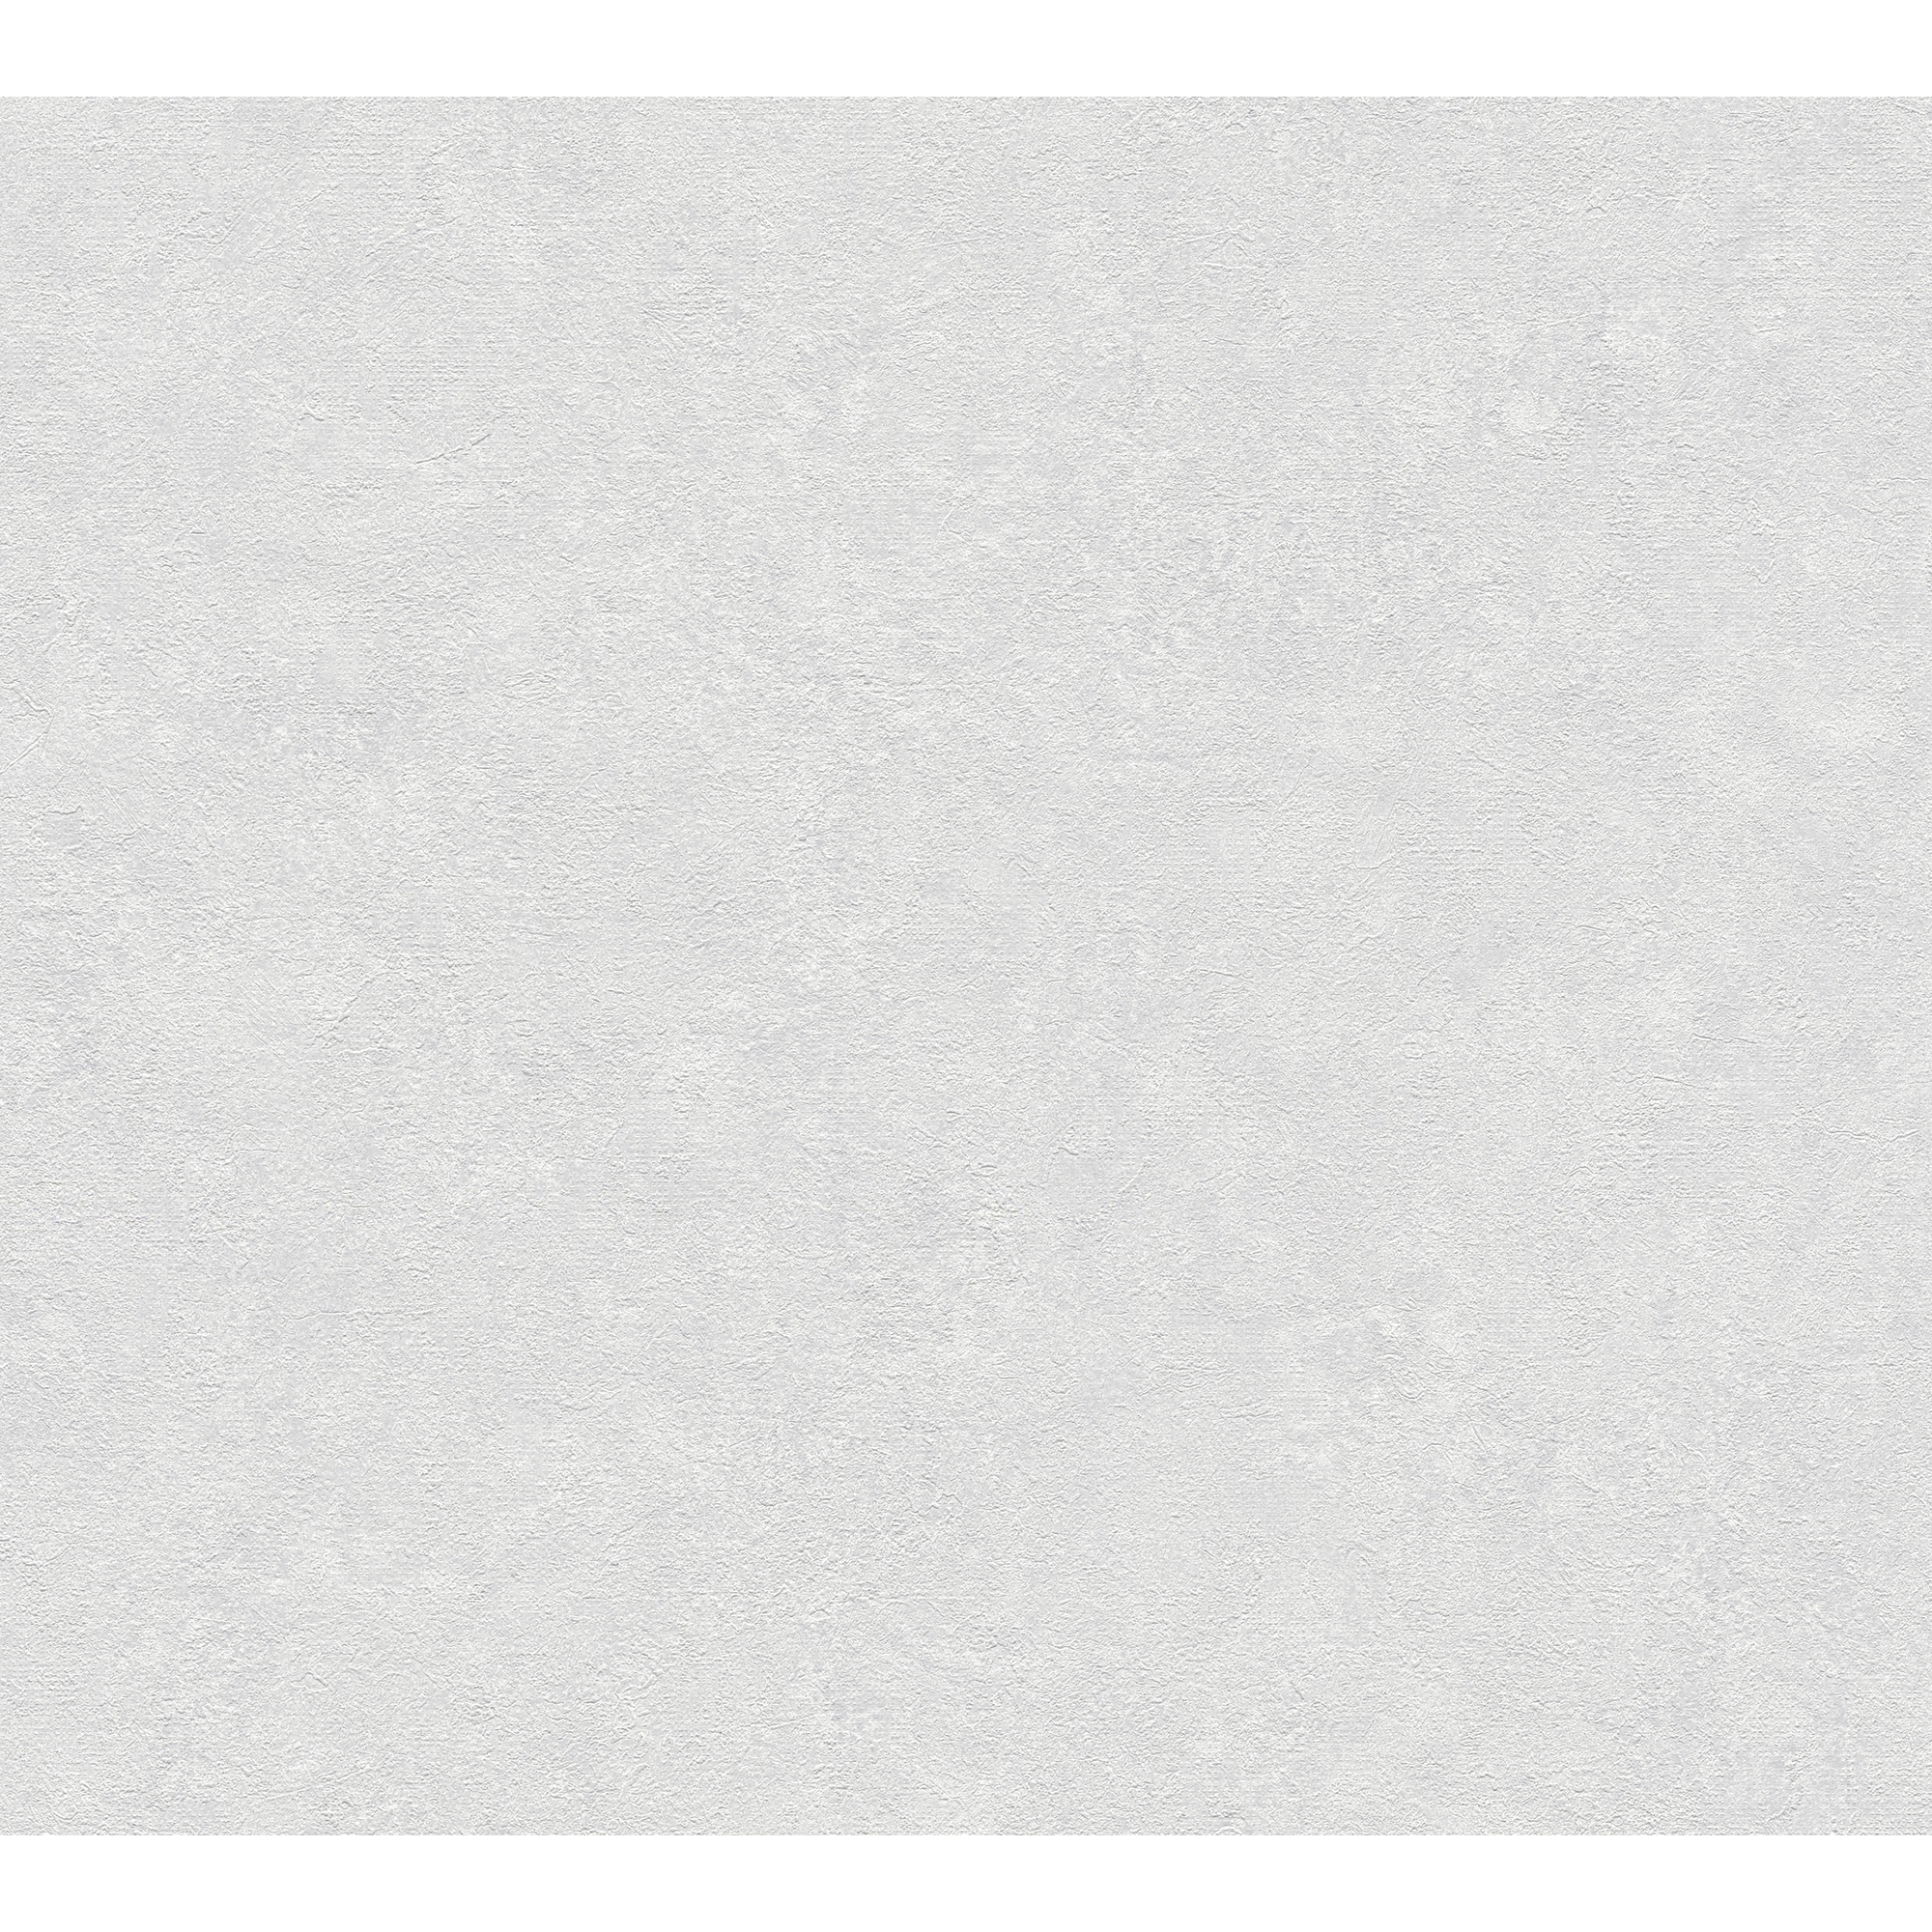 Vliestapete 'Industrial' Metalloptik grau/weiß 53 x 1005 cm + product picture